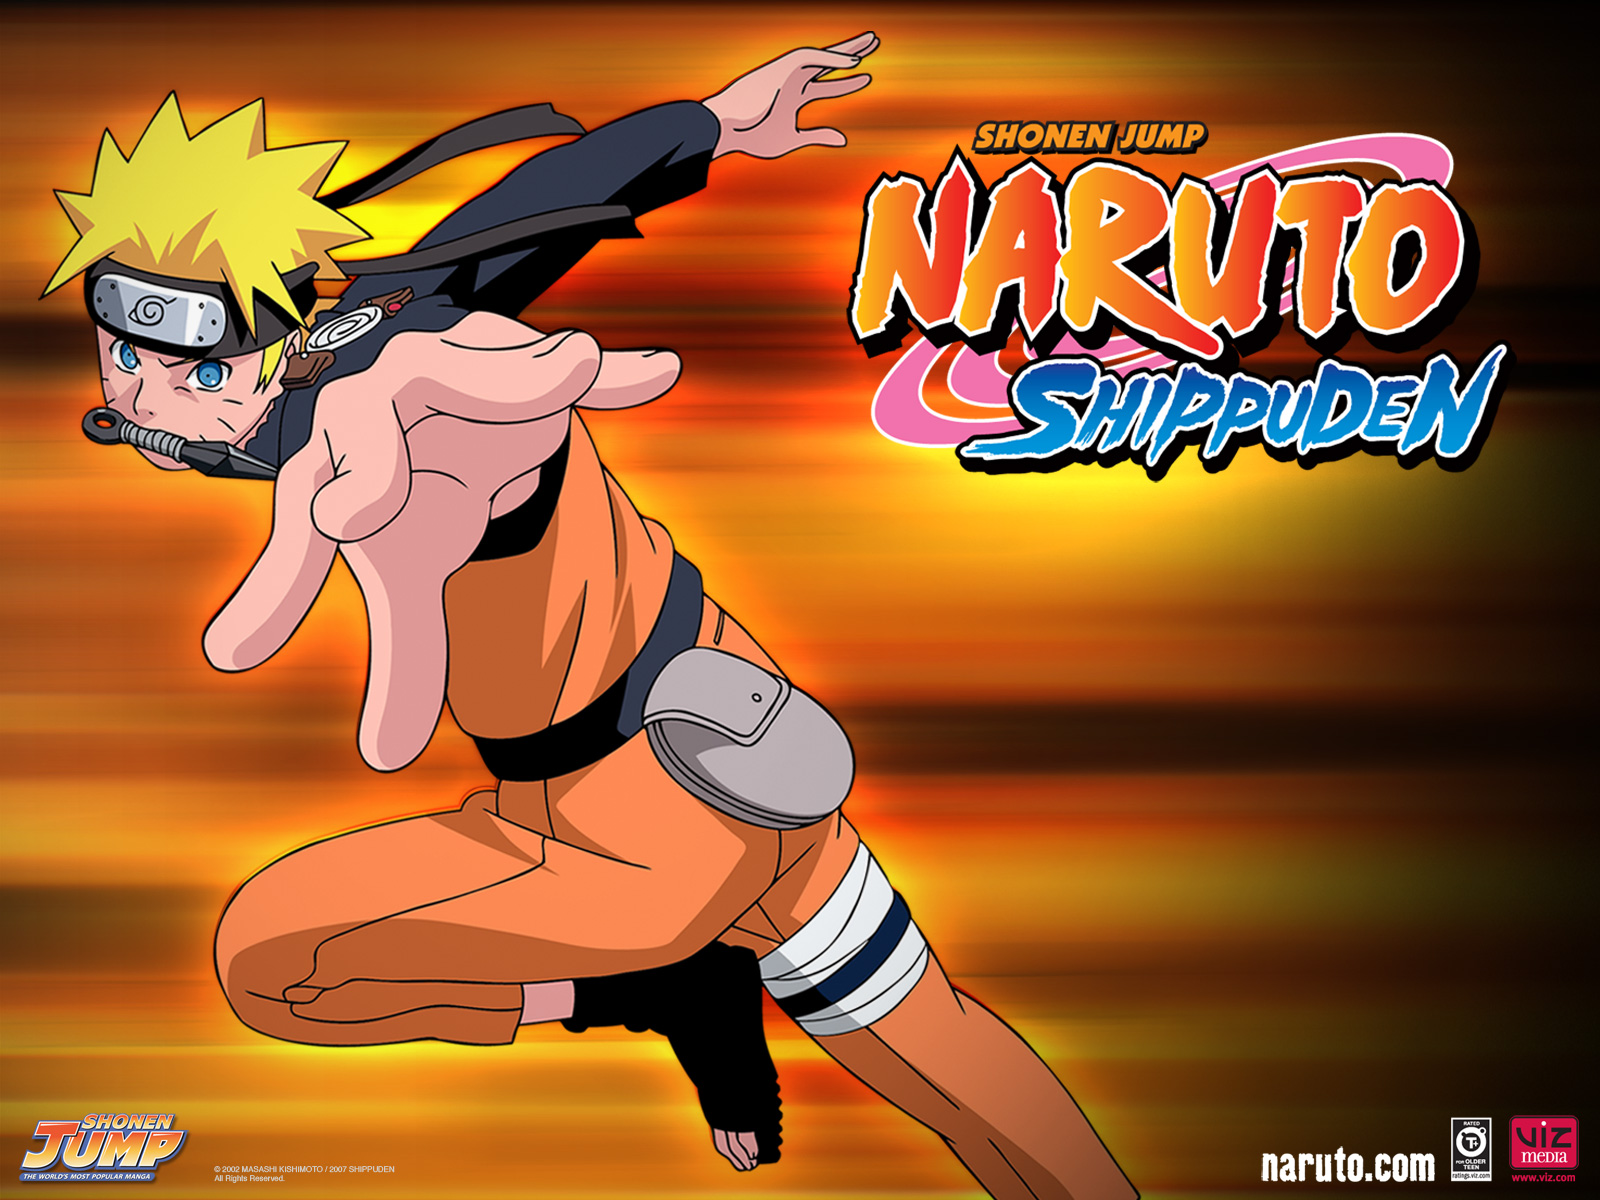 Naruto Uzumaki - Naruto Shippuuden Wallpaper (30889194) - Fanpop